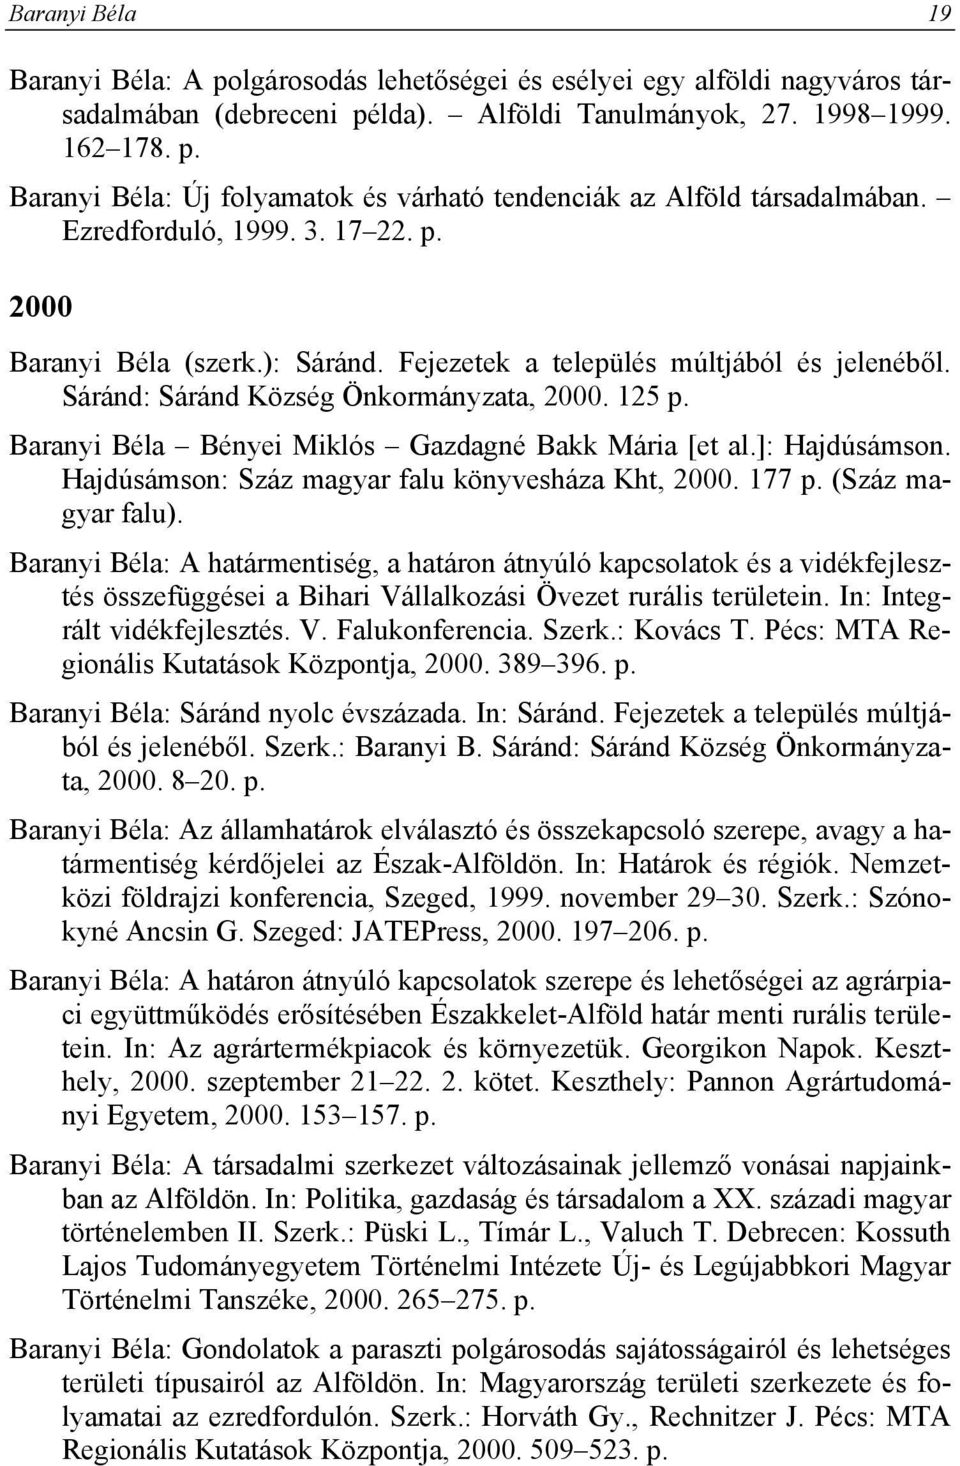 Baranyi Béla Bényei Miklós Gazdagné Bakk Mária [et al.]: Hajdúsámson. Hajdúsámson: Száz magyar falu könyvesháza Kht, 2000. 177 p. (Száz magyar falu).